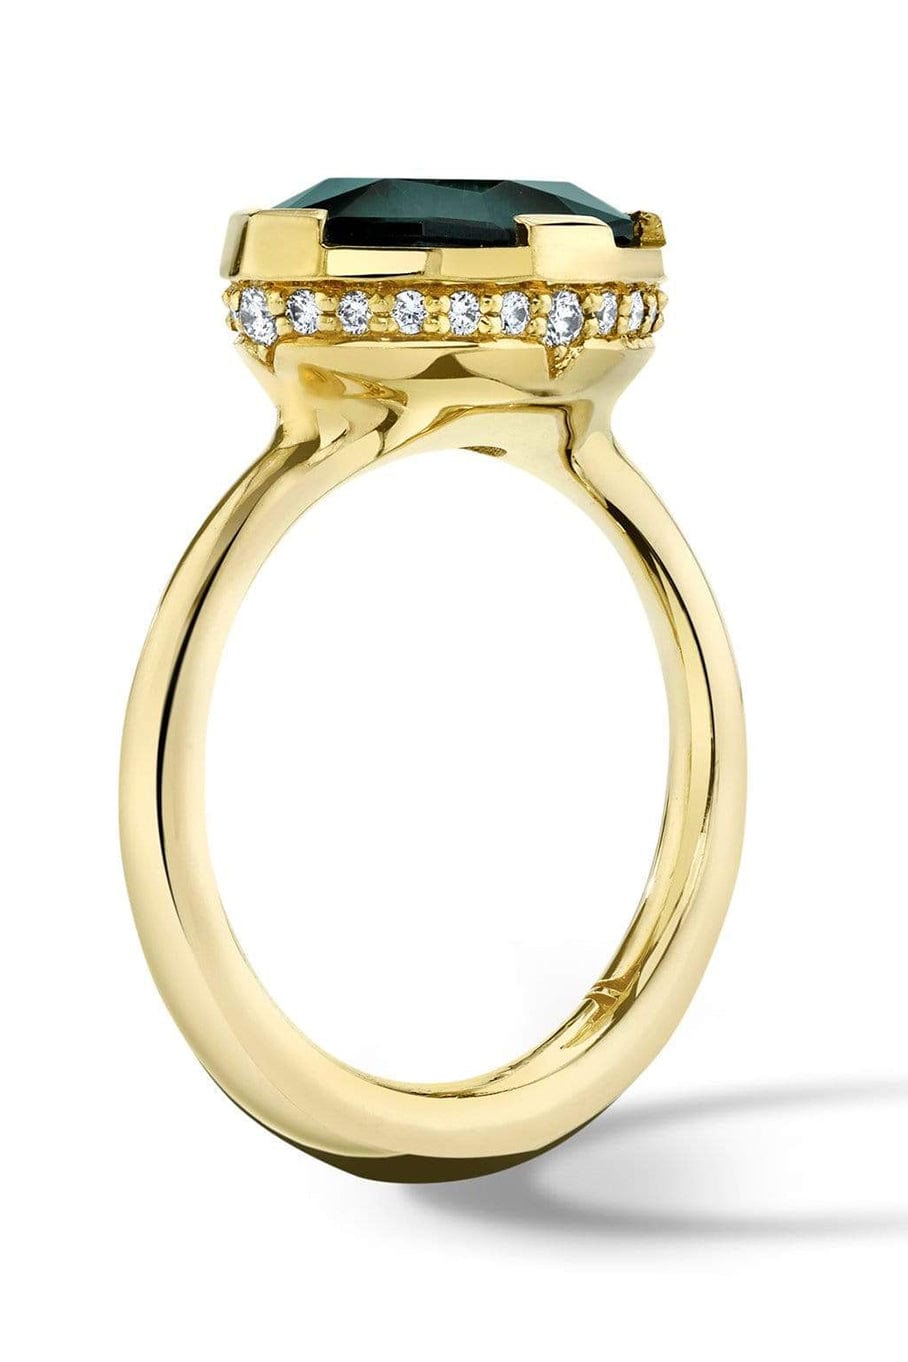 ANDY LIF-Sea Foam Tourmaline Diamond Ring-YELLOW GOLD